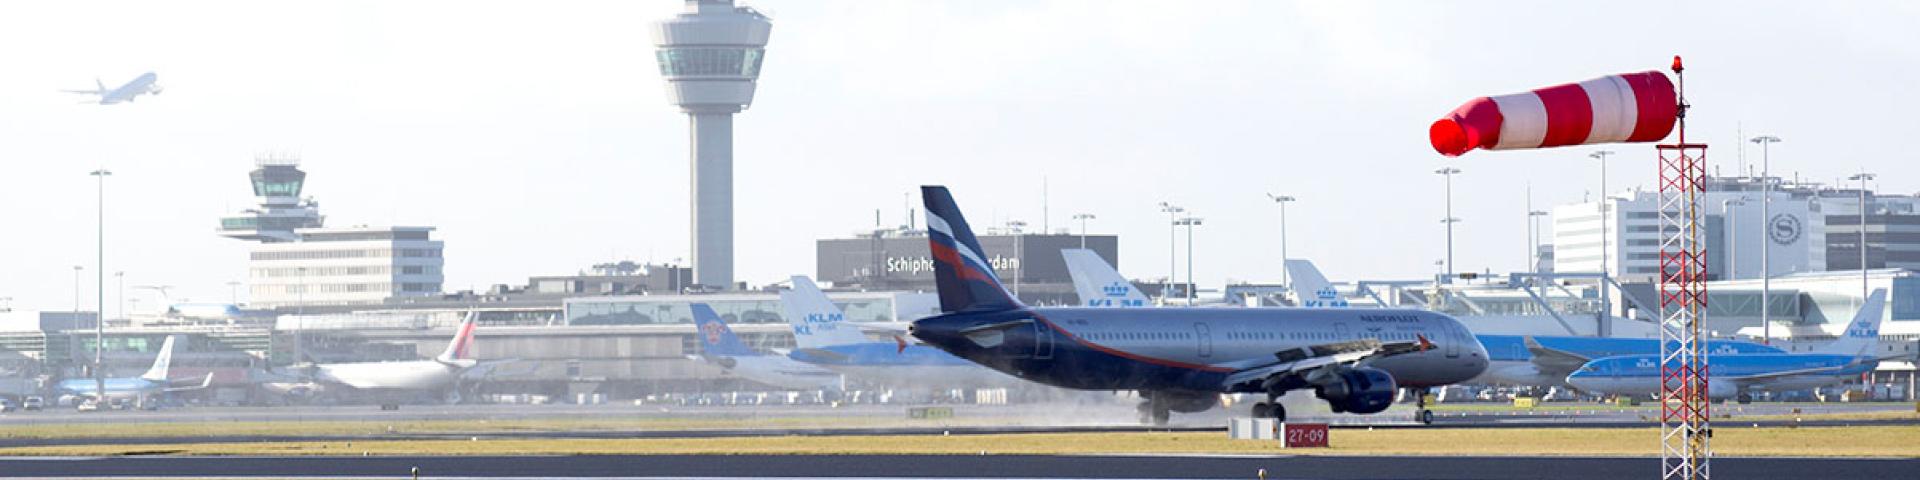 Beeld van luchthaven Schiphol met de verkeerstoren op de achtergrond